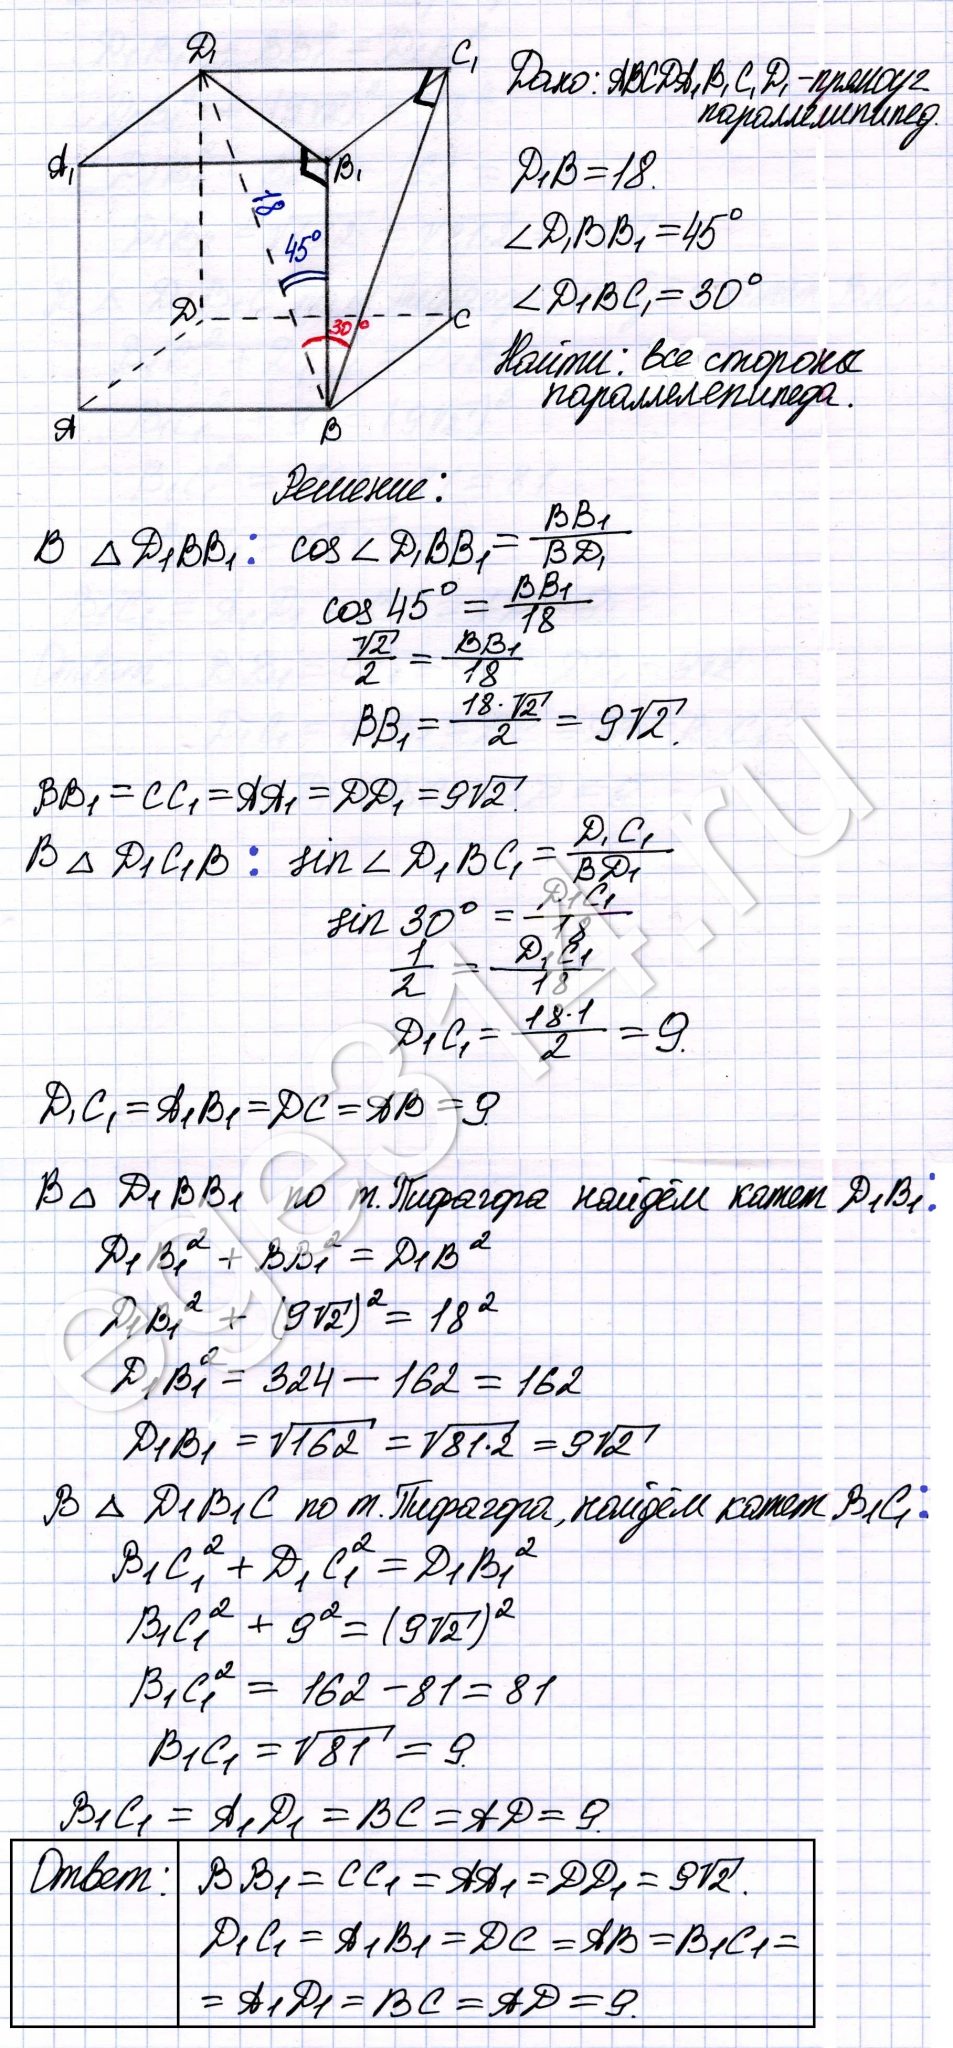 Решение №2361 По данным рисунка найдите размеры прямоугольного параллелепипеда.